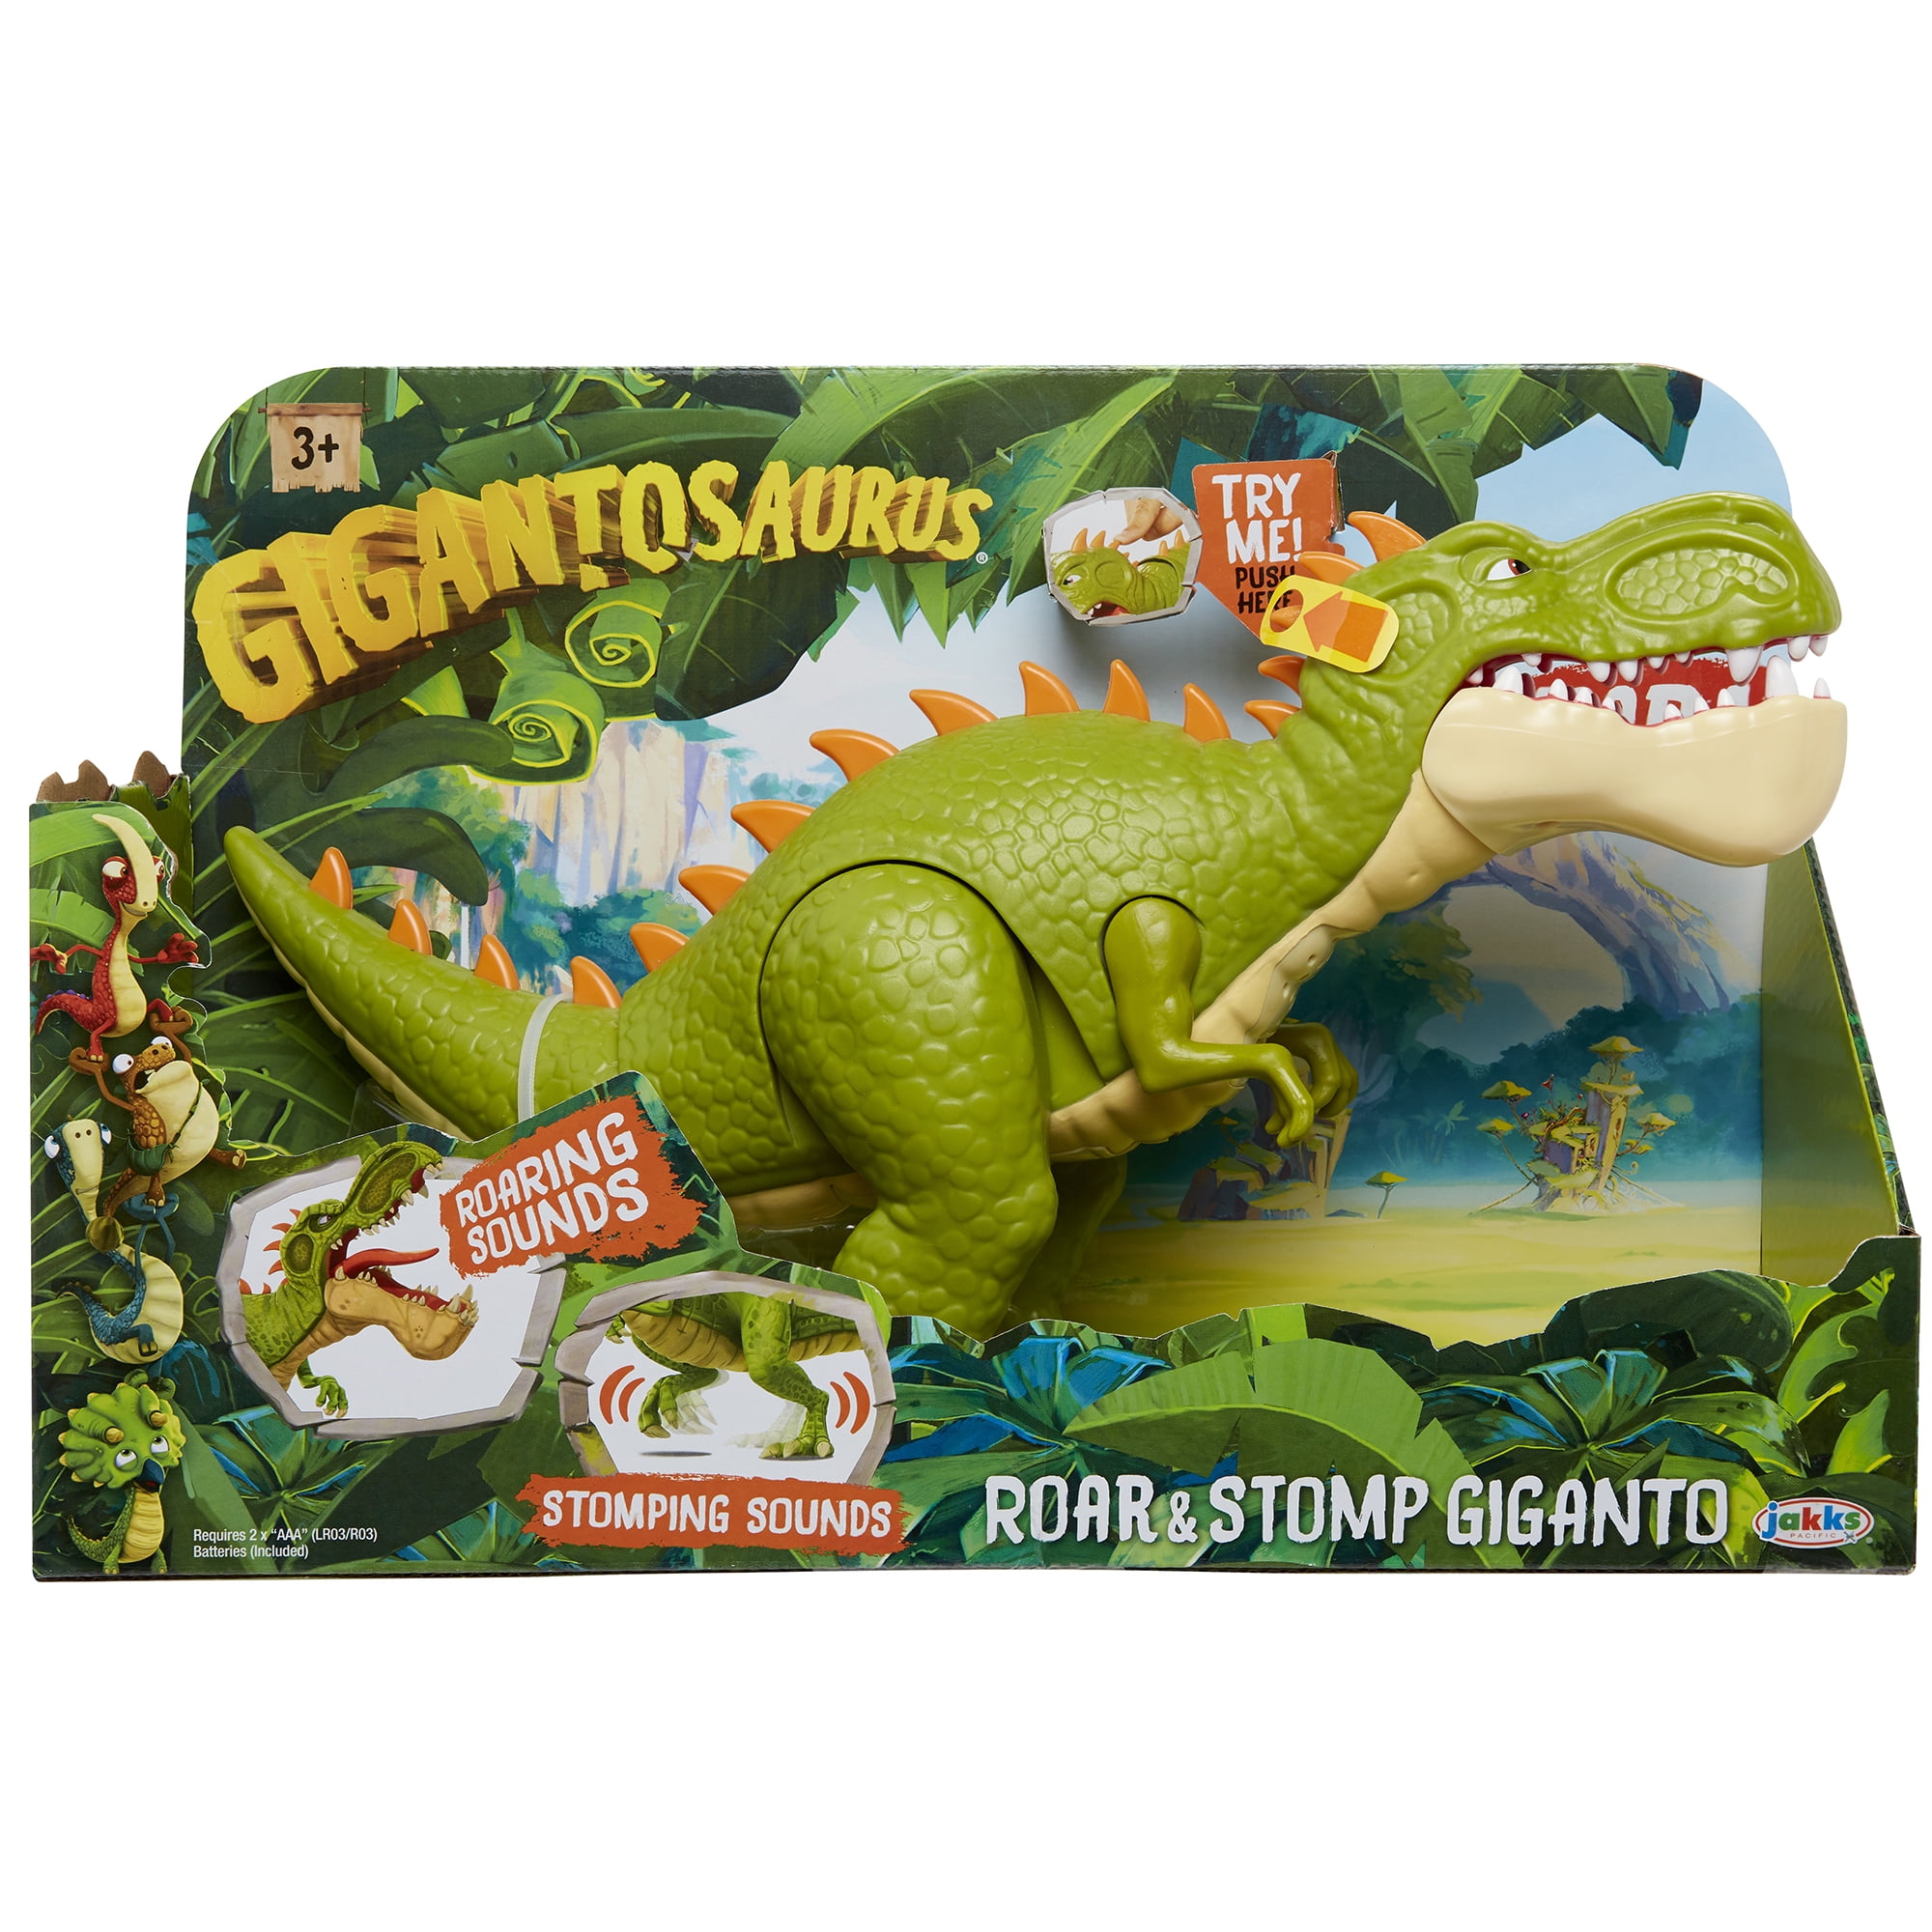 Gigantosaurus Giganto & Friends Toy Action Figures Mazu Bill Tiny Rocky Playset for sale online